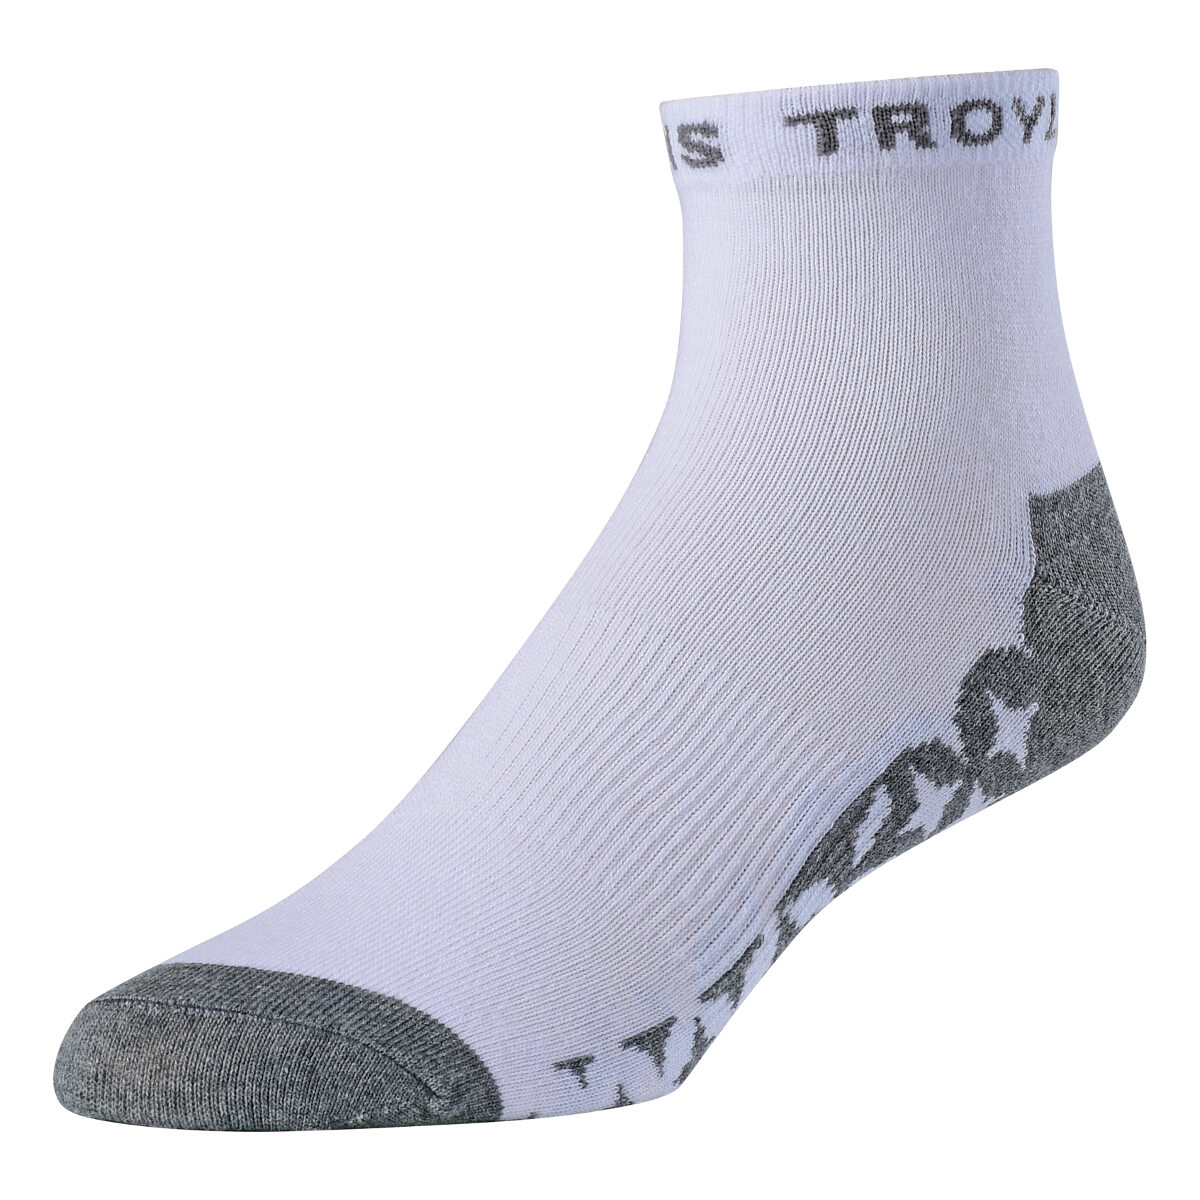 Troy Lee Designs Socks Starburst Quarter White, 3 Pack